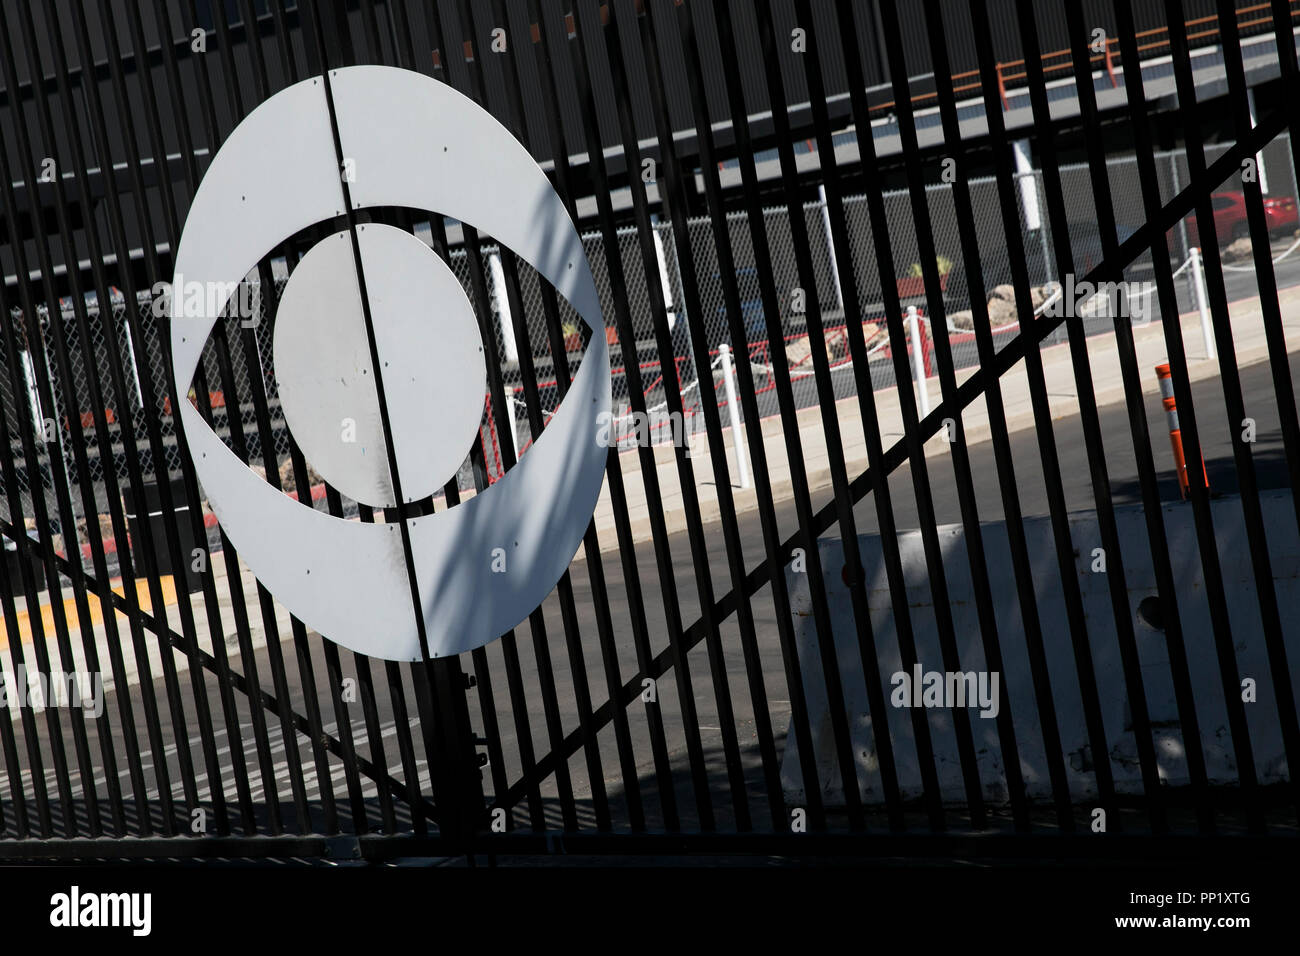 Ein logo Zeichen außerhalb von CBS Television City in Los Angeles, Kalifornien am 15. September 2018. Stockfoto